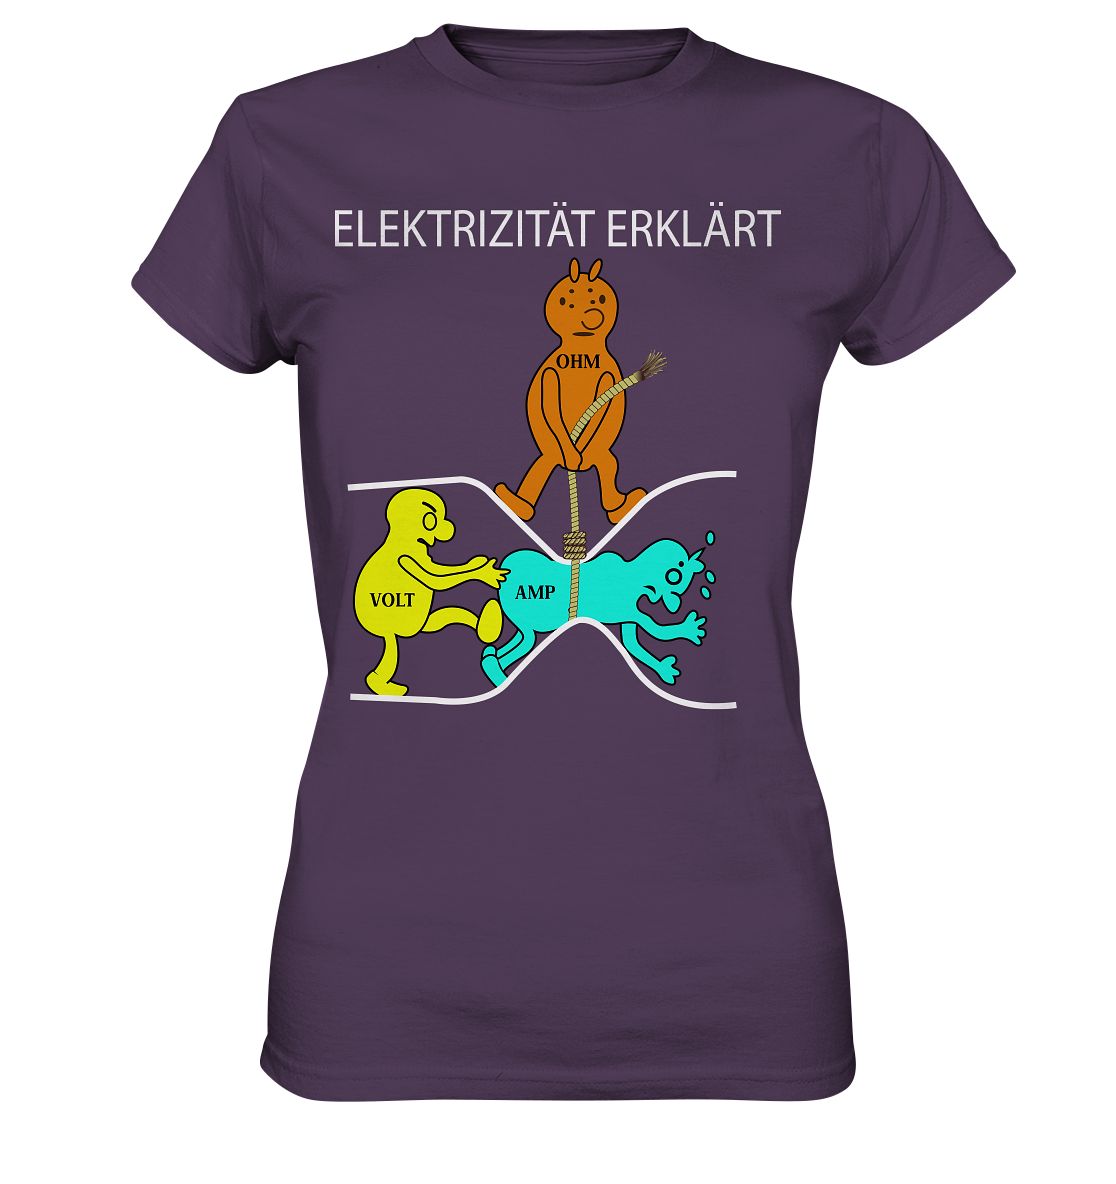 Elektrizität erklärt - Ladies Premium Shirt